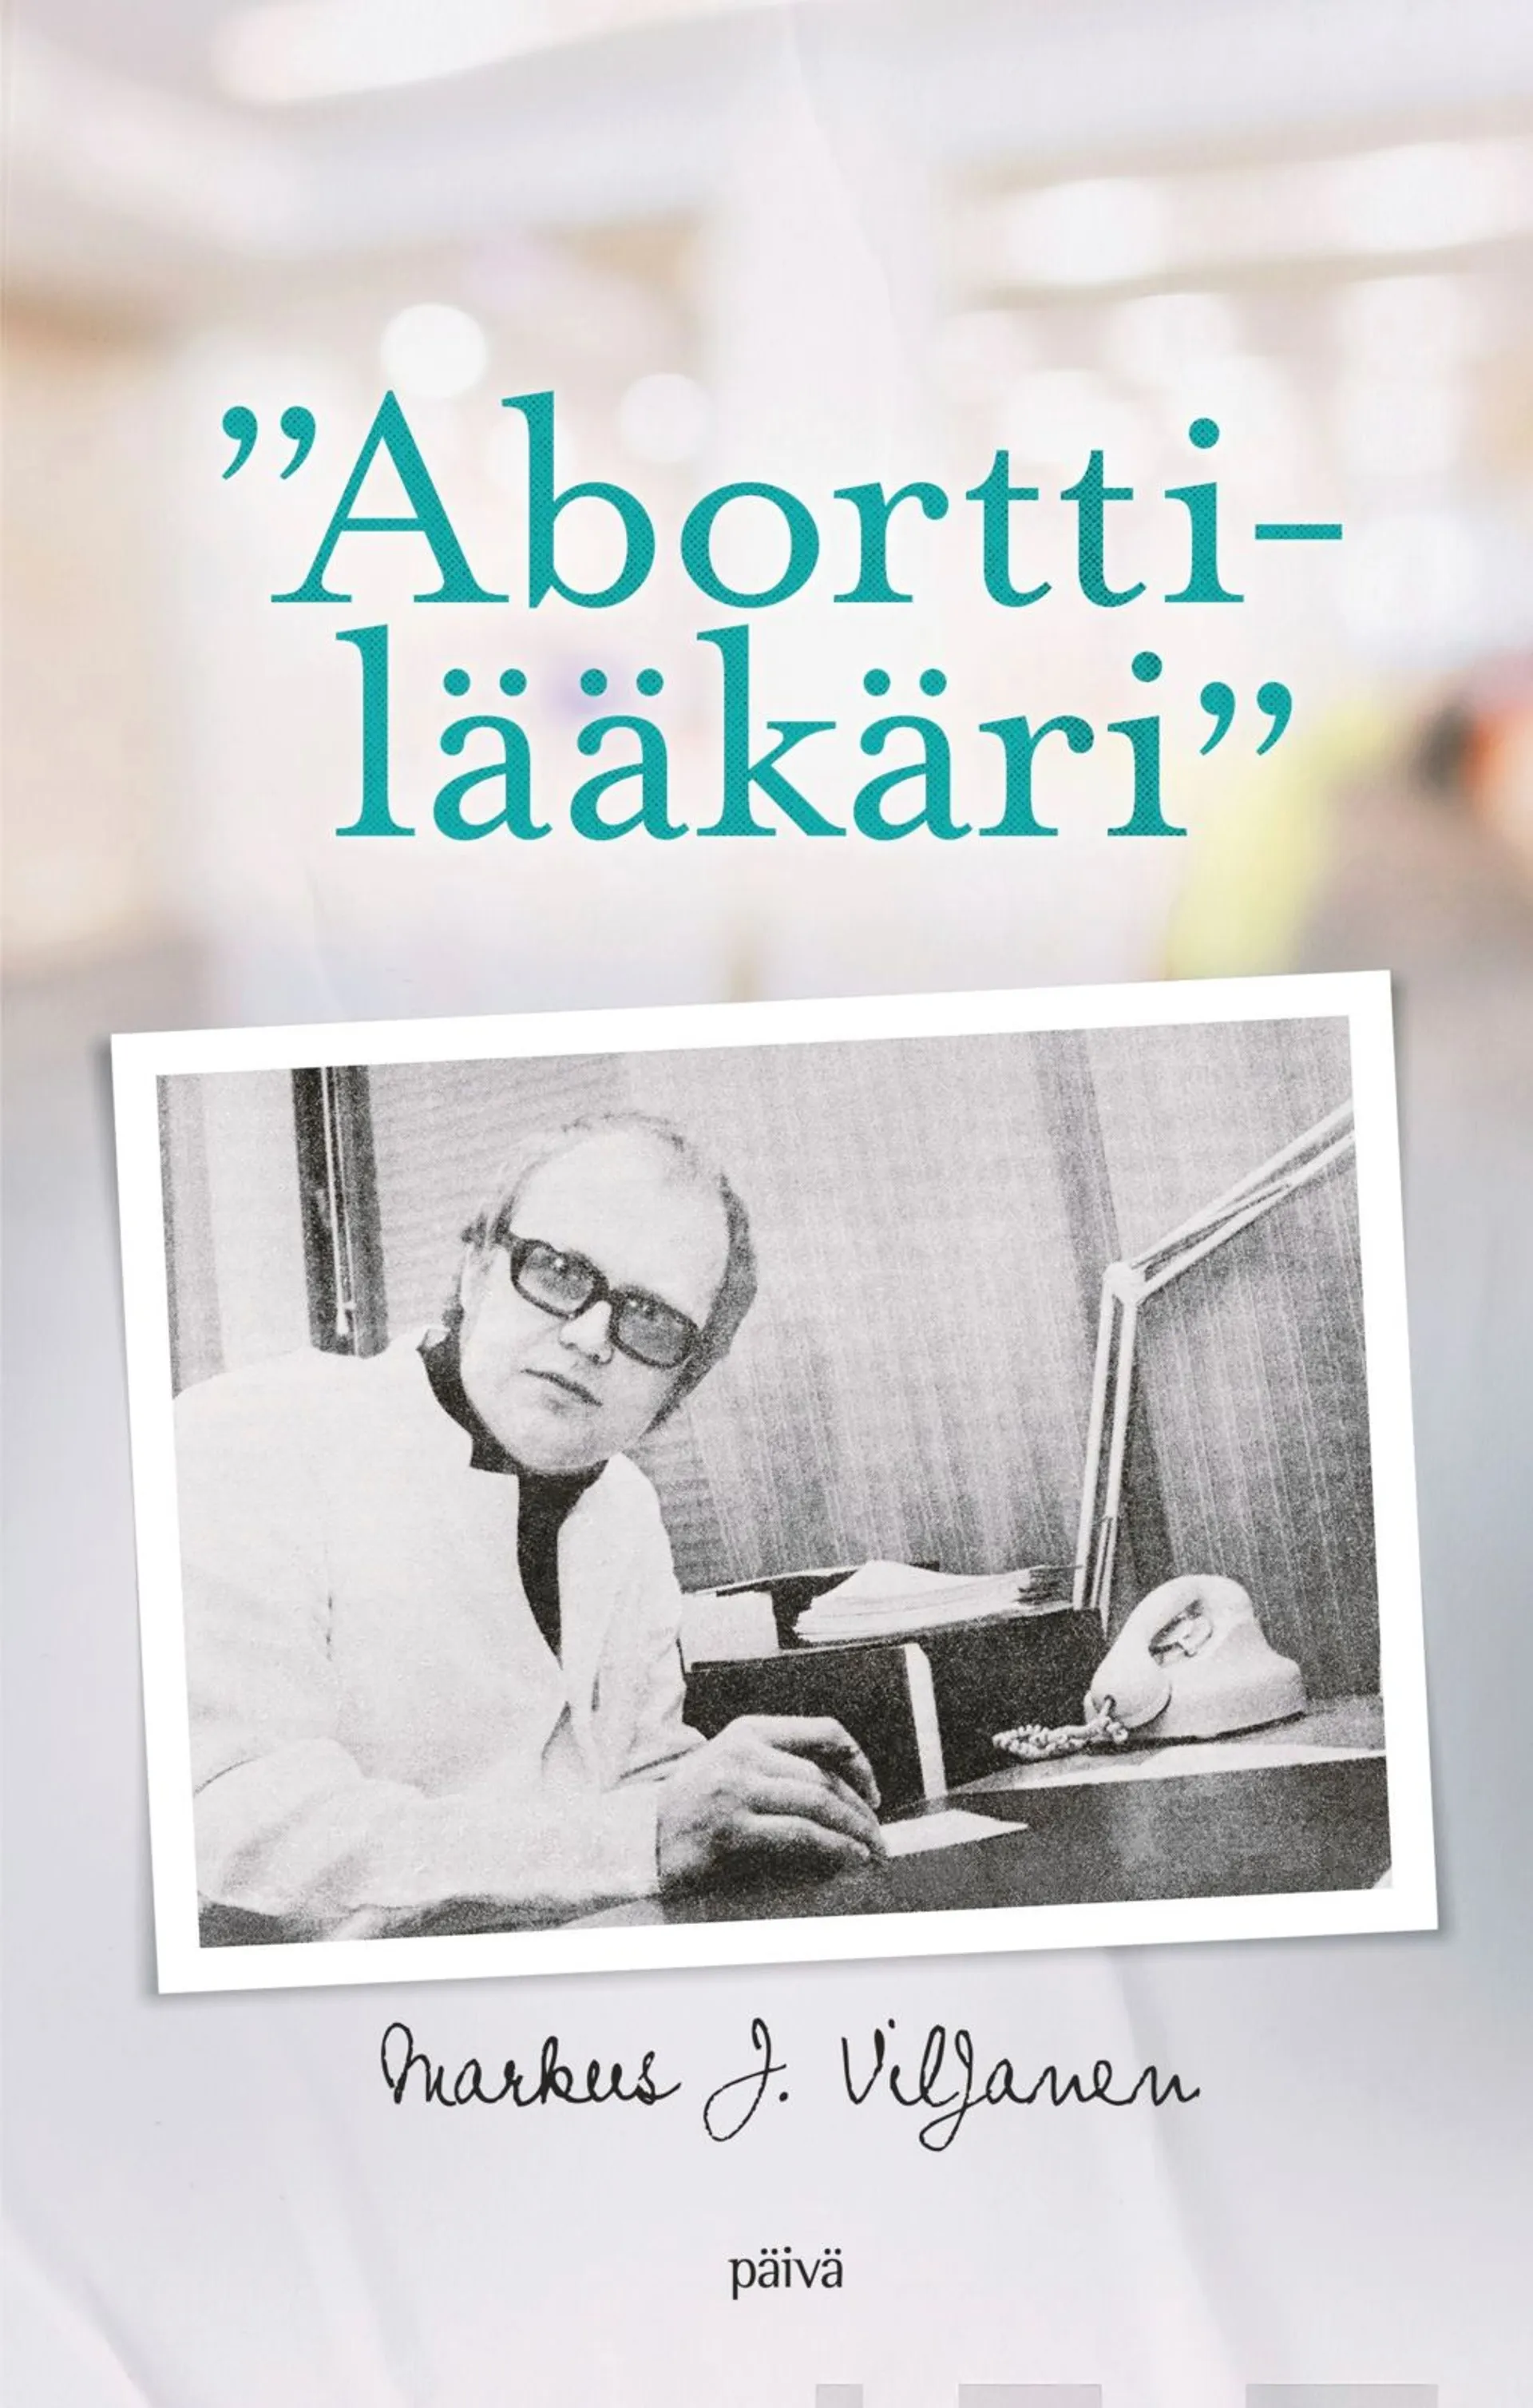 Viljanen Markus J., "Aborttilääkäri"